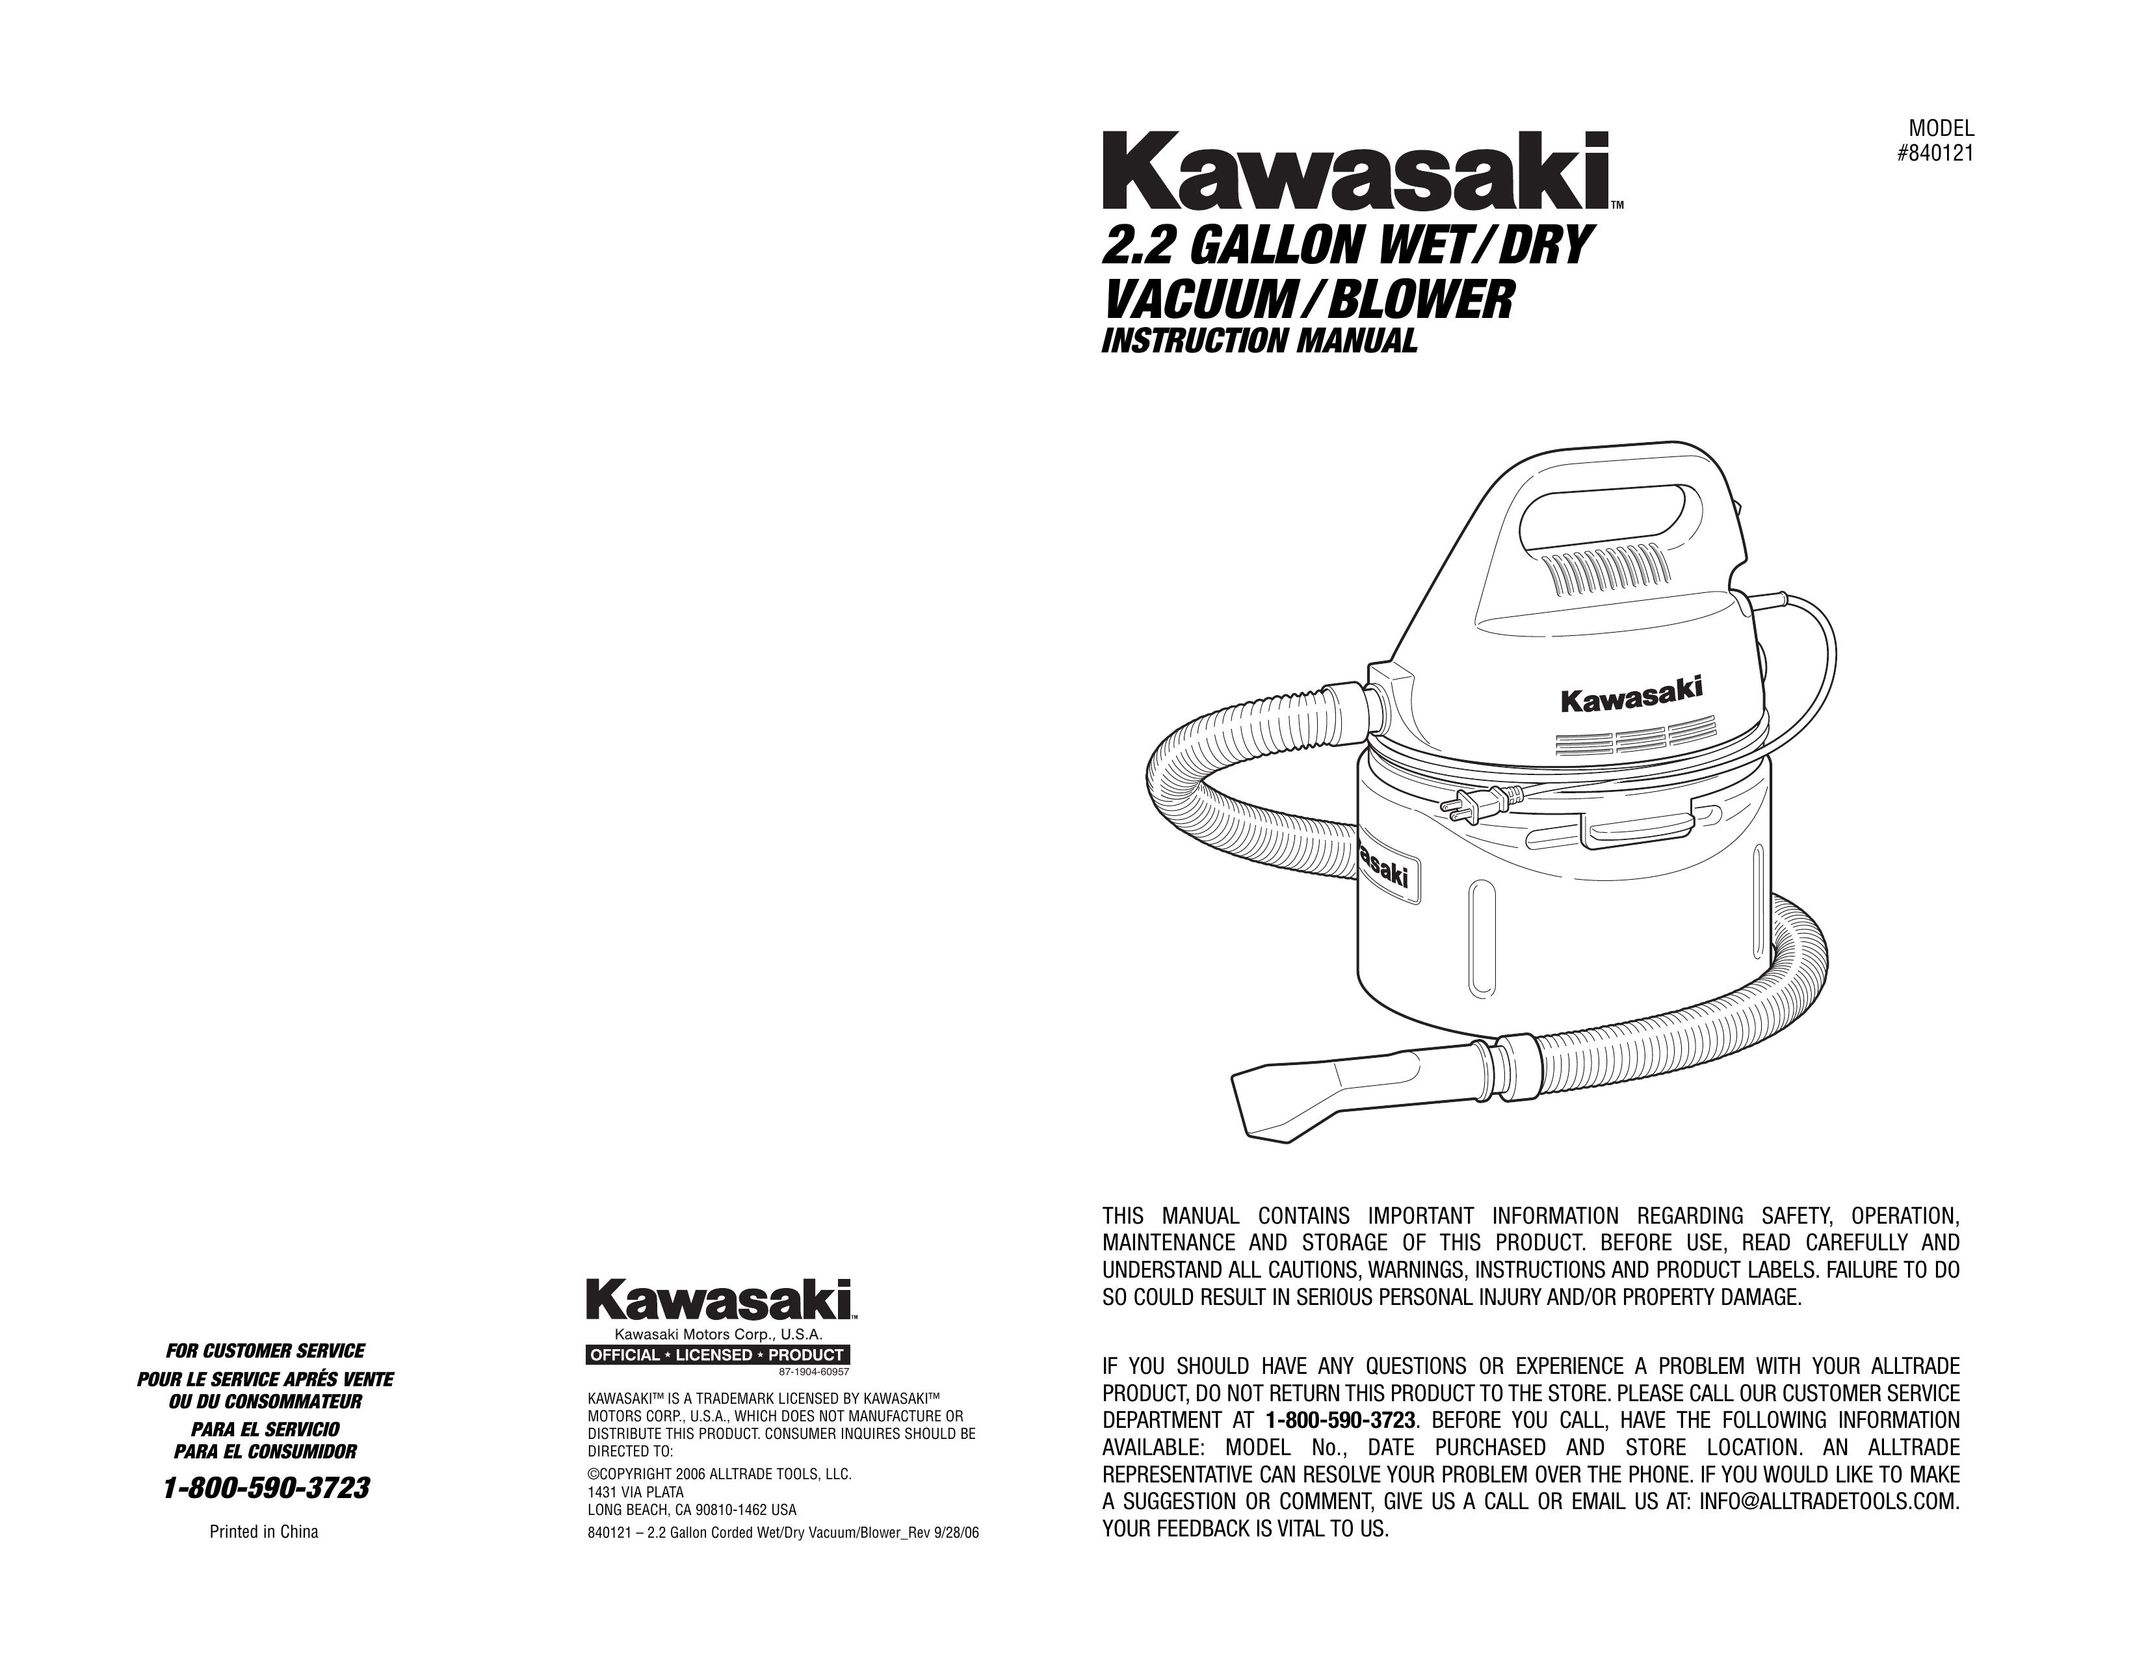 Kawasaki 840121 Vacuum Cleaner User Manual